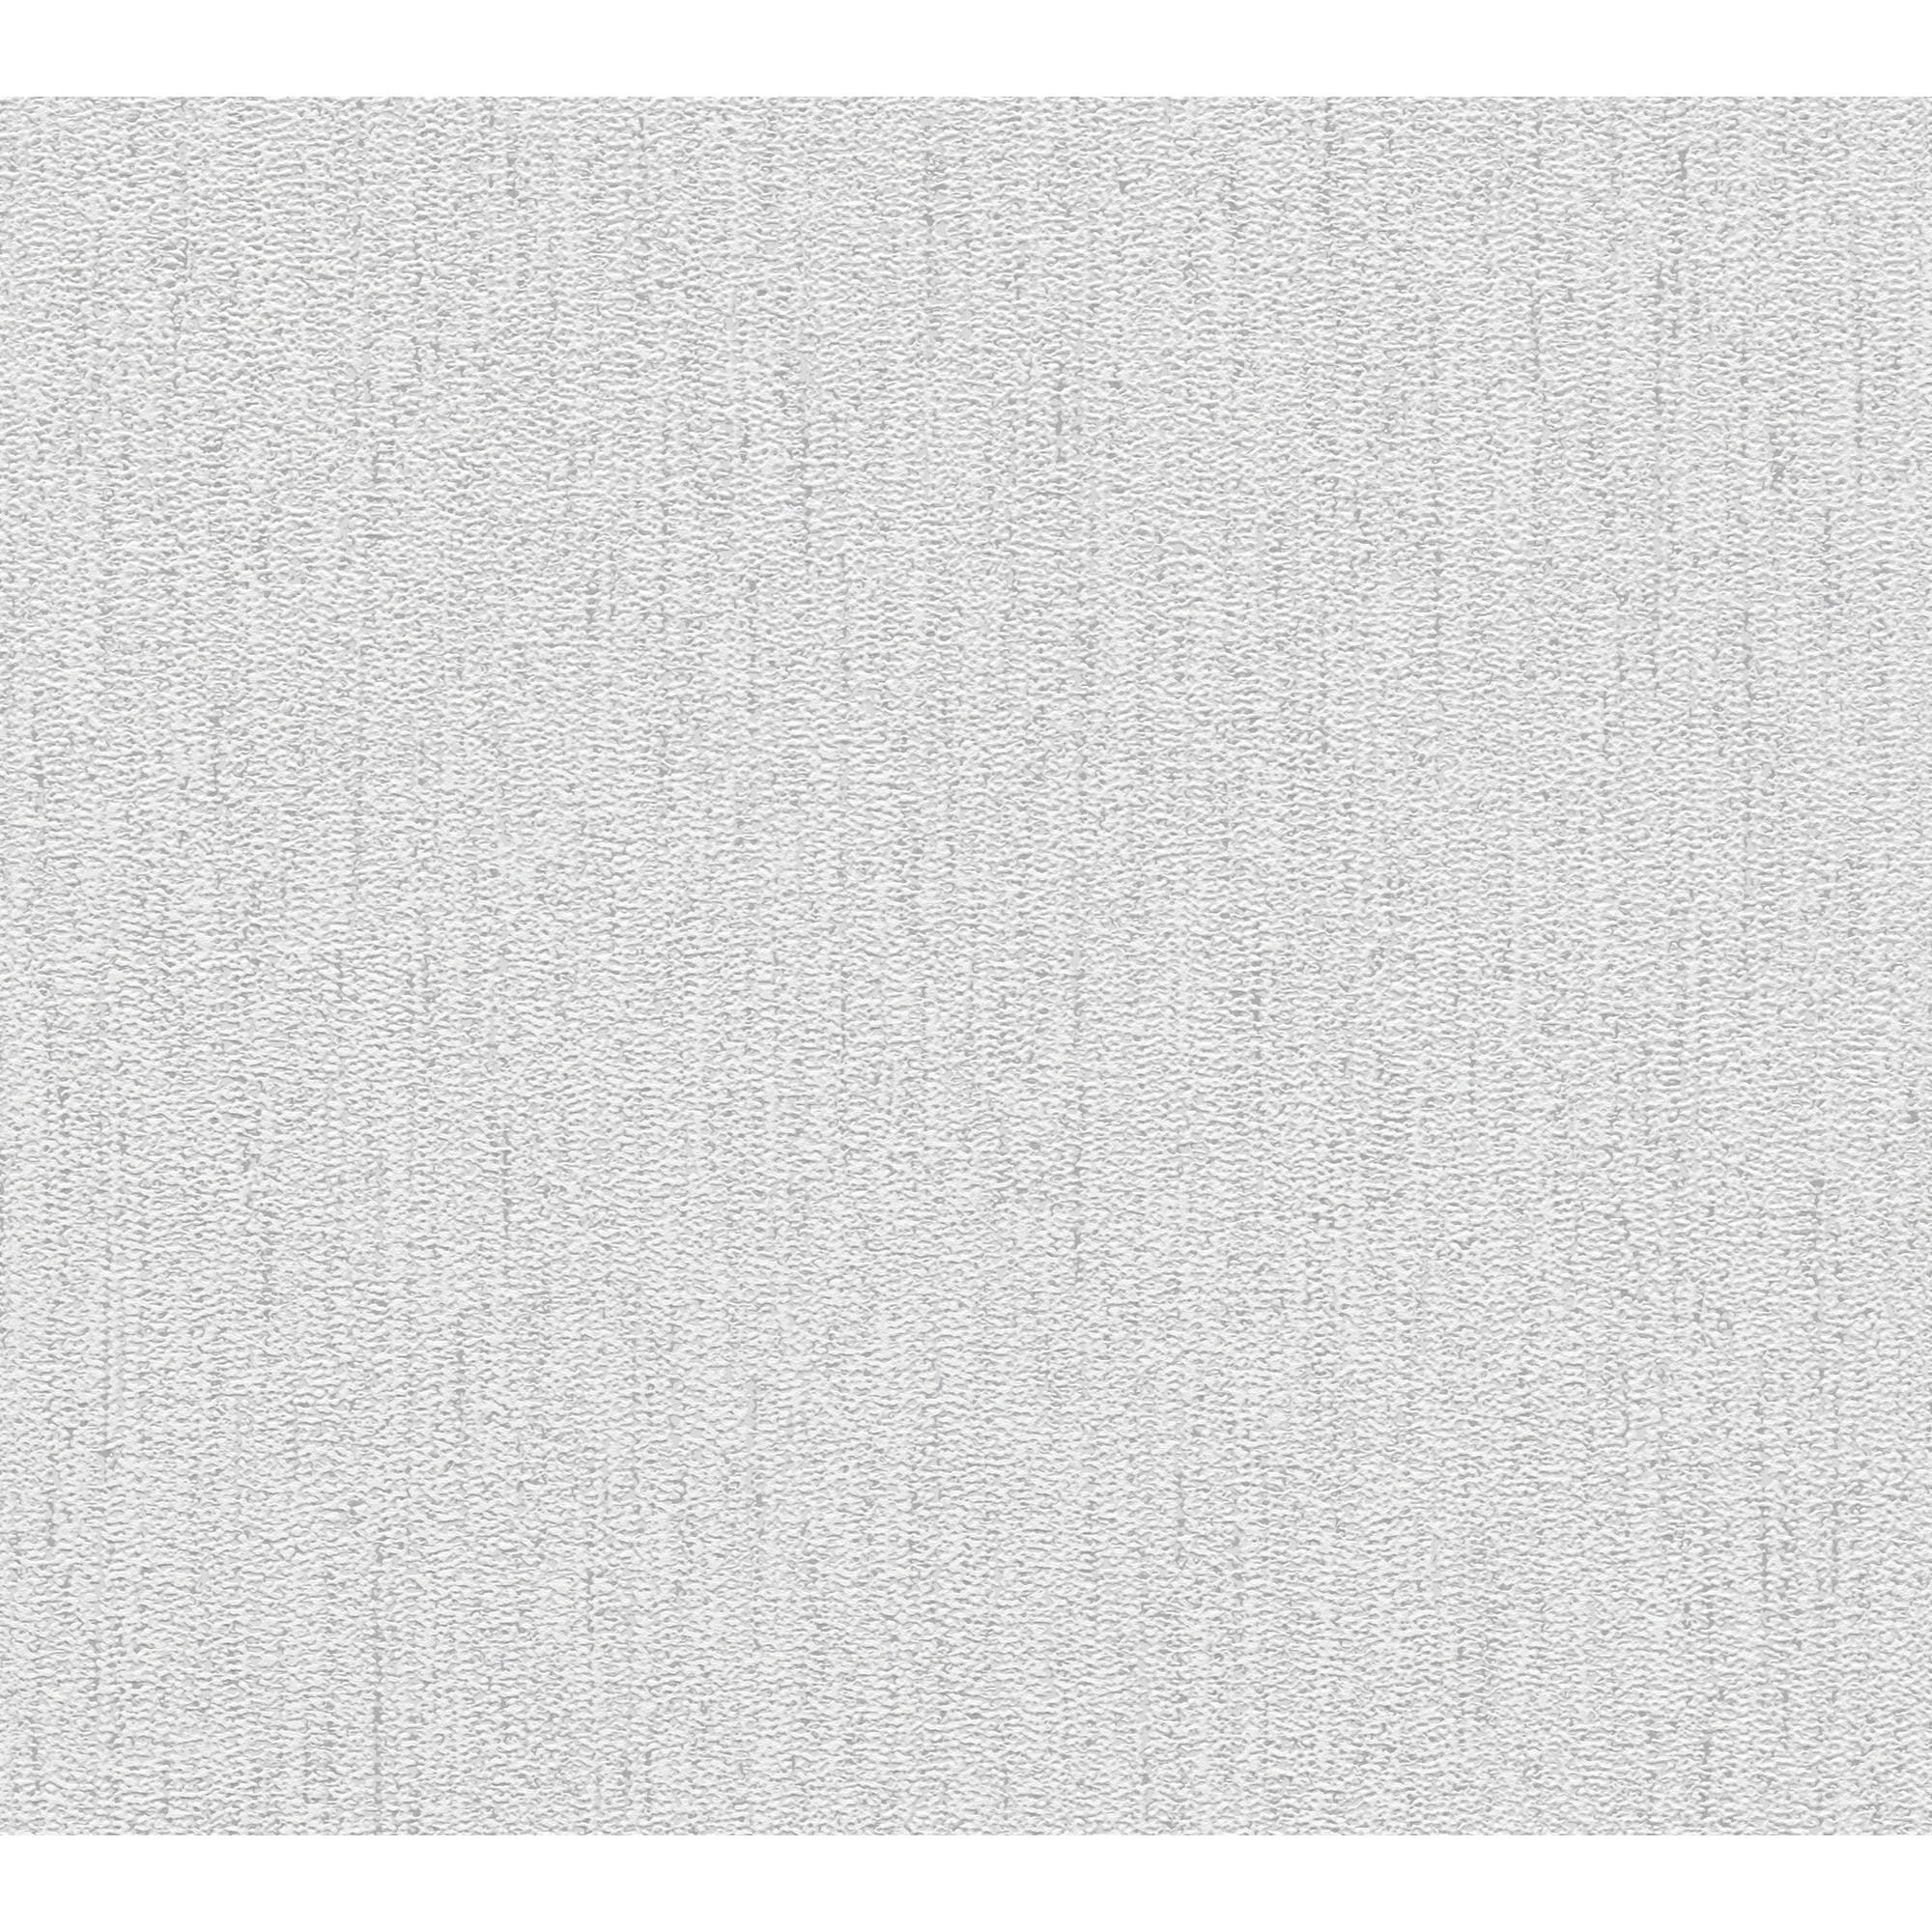 Vliestapete 'Attractive 2' Gewebe-Struktur hellgrau/silber 10,05 x 0,53 m + product picture